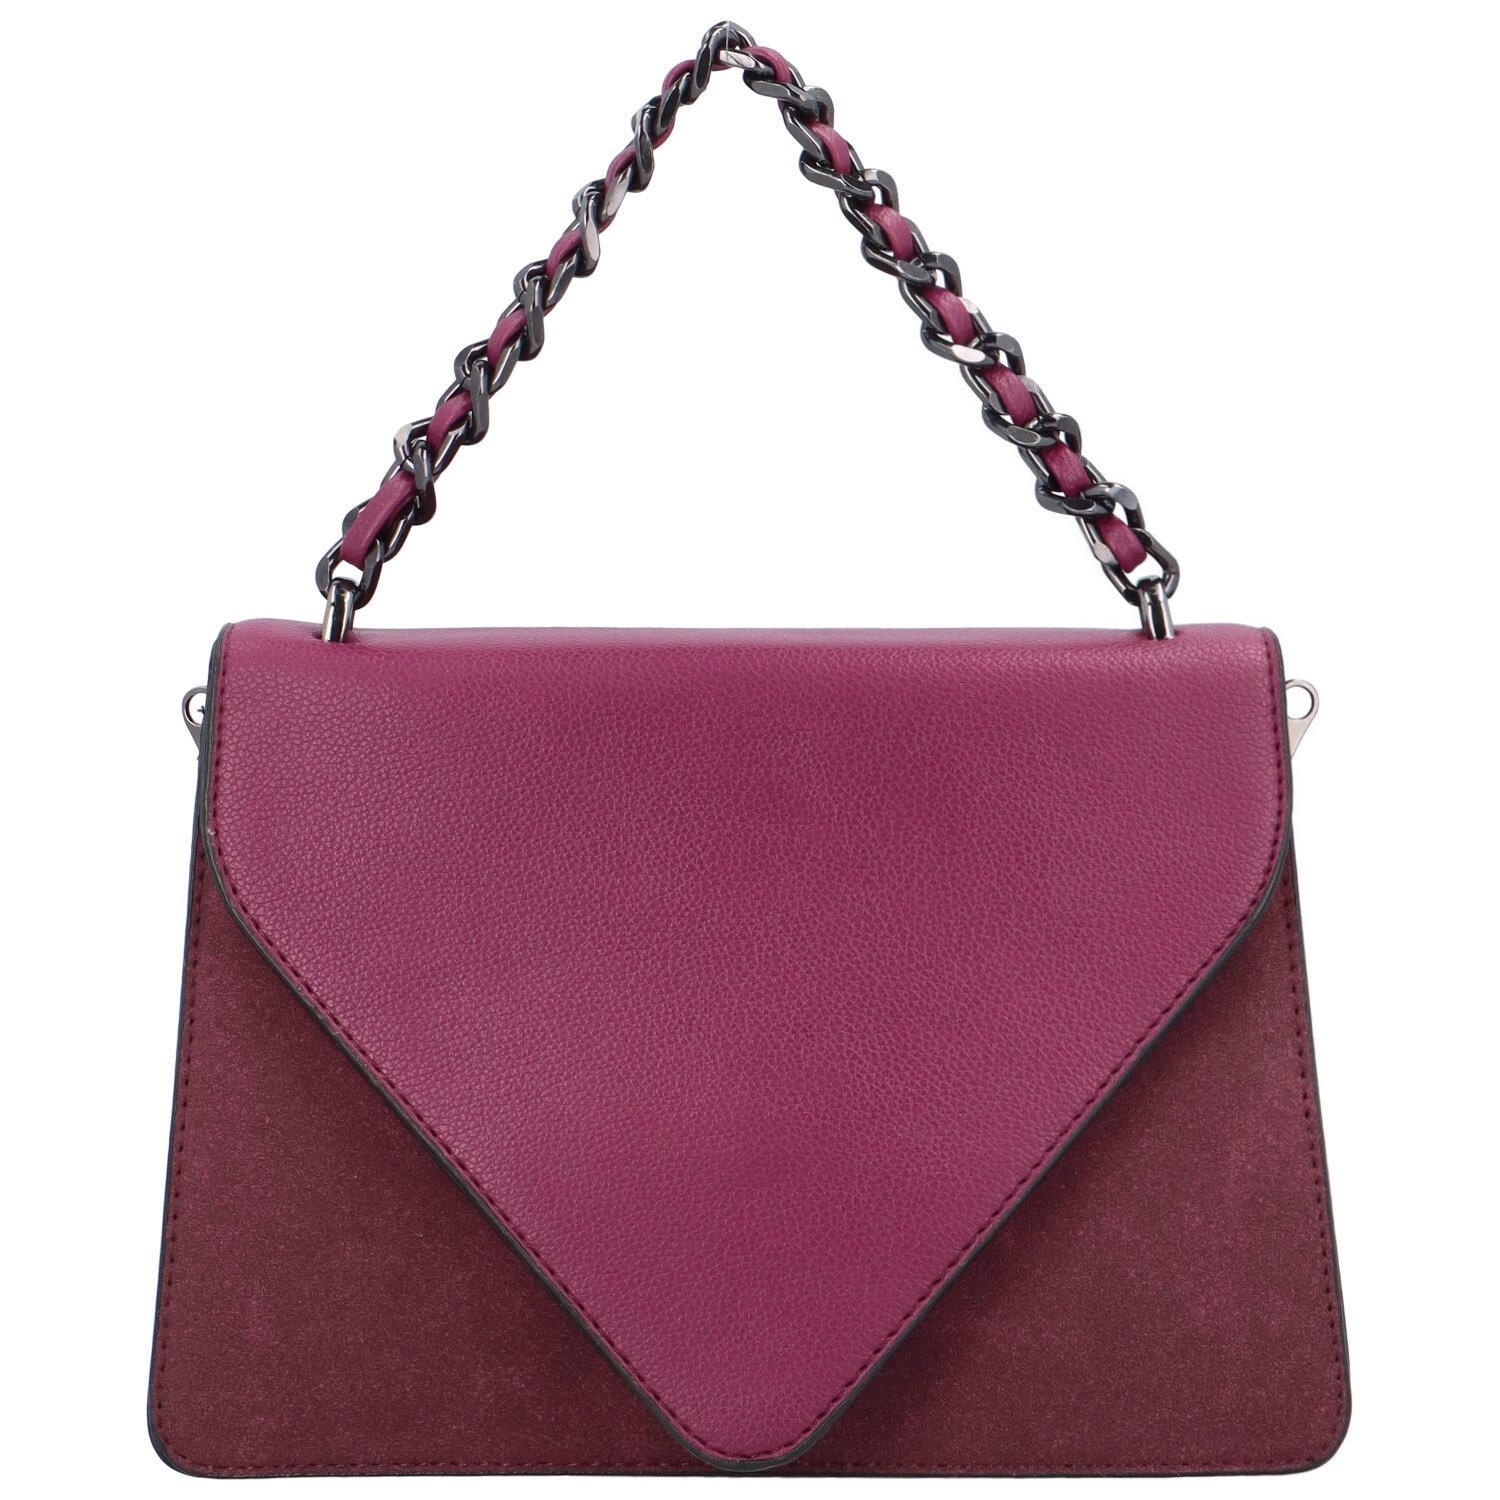 Dámská kabelka do ruky fialově červená - Maria C Mikaela